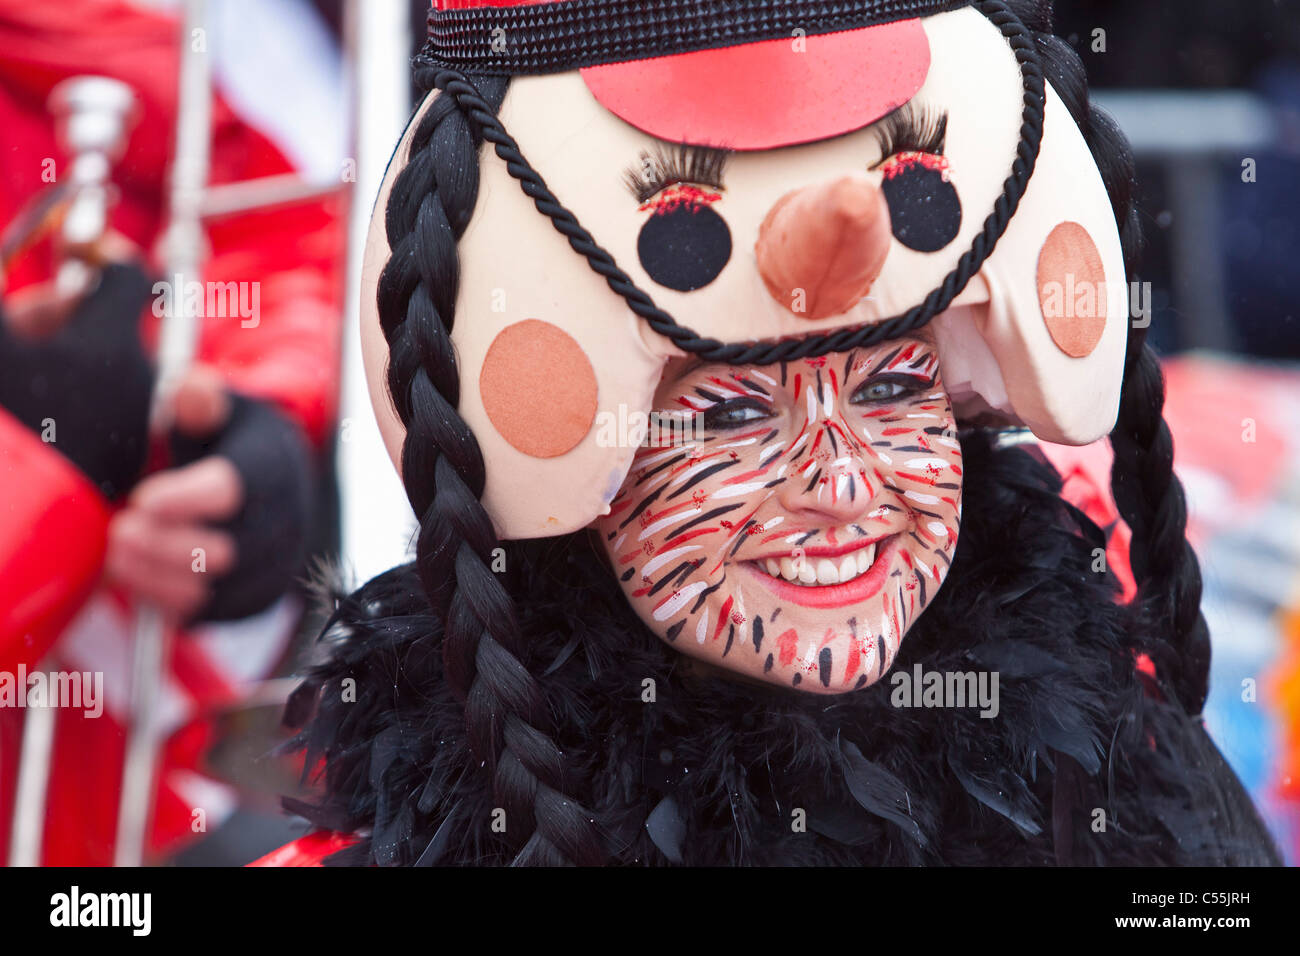 Les Pays-Bas, Maastricht, aux personnes bénéficiant chaque année au cours du festival de carnaval. Banque D'Images